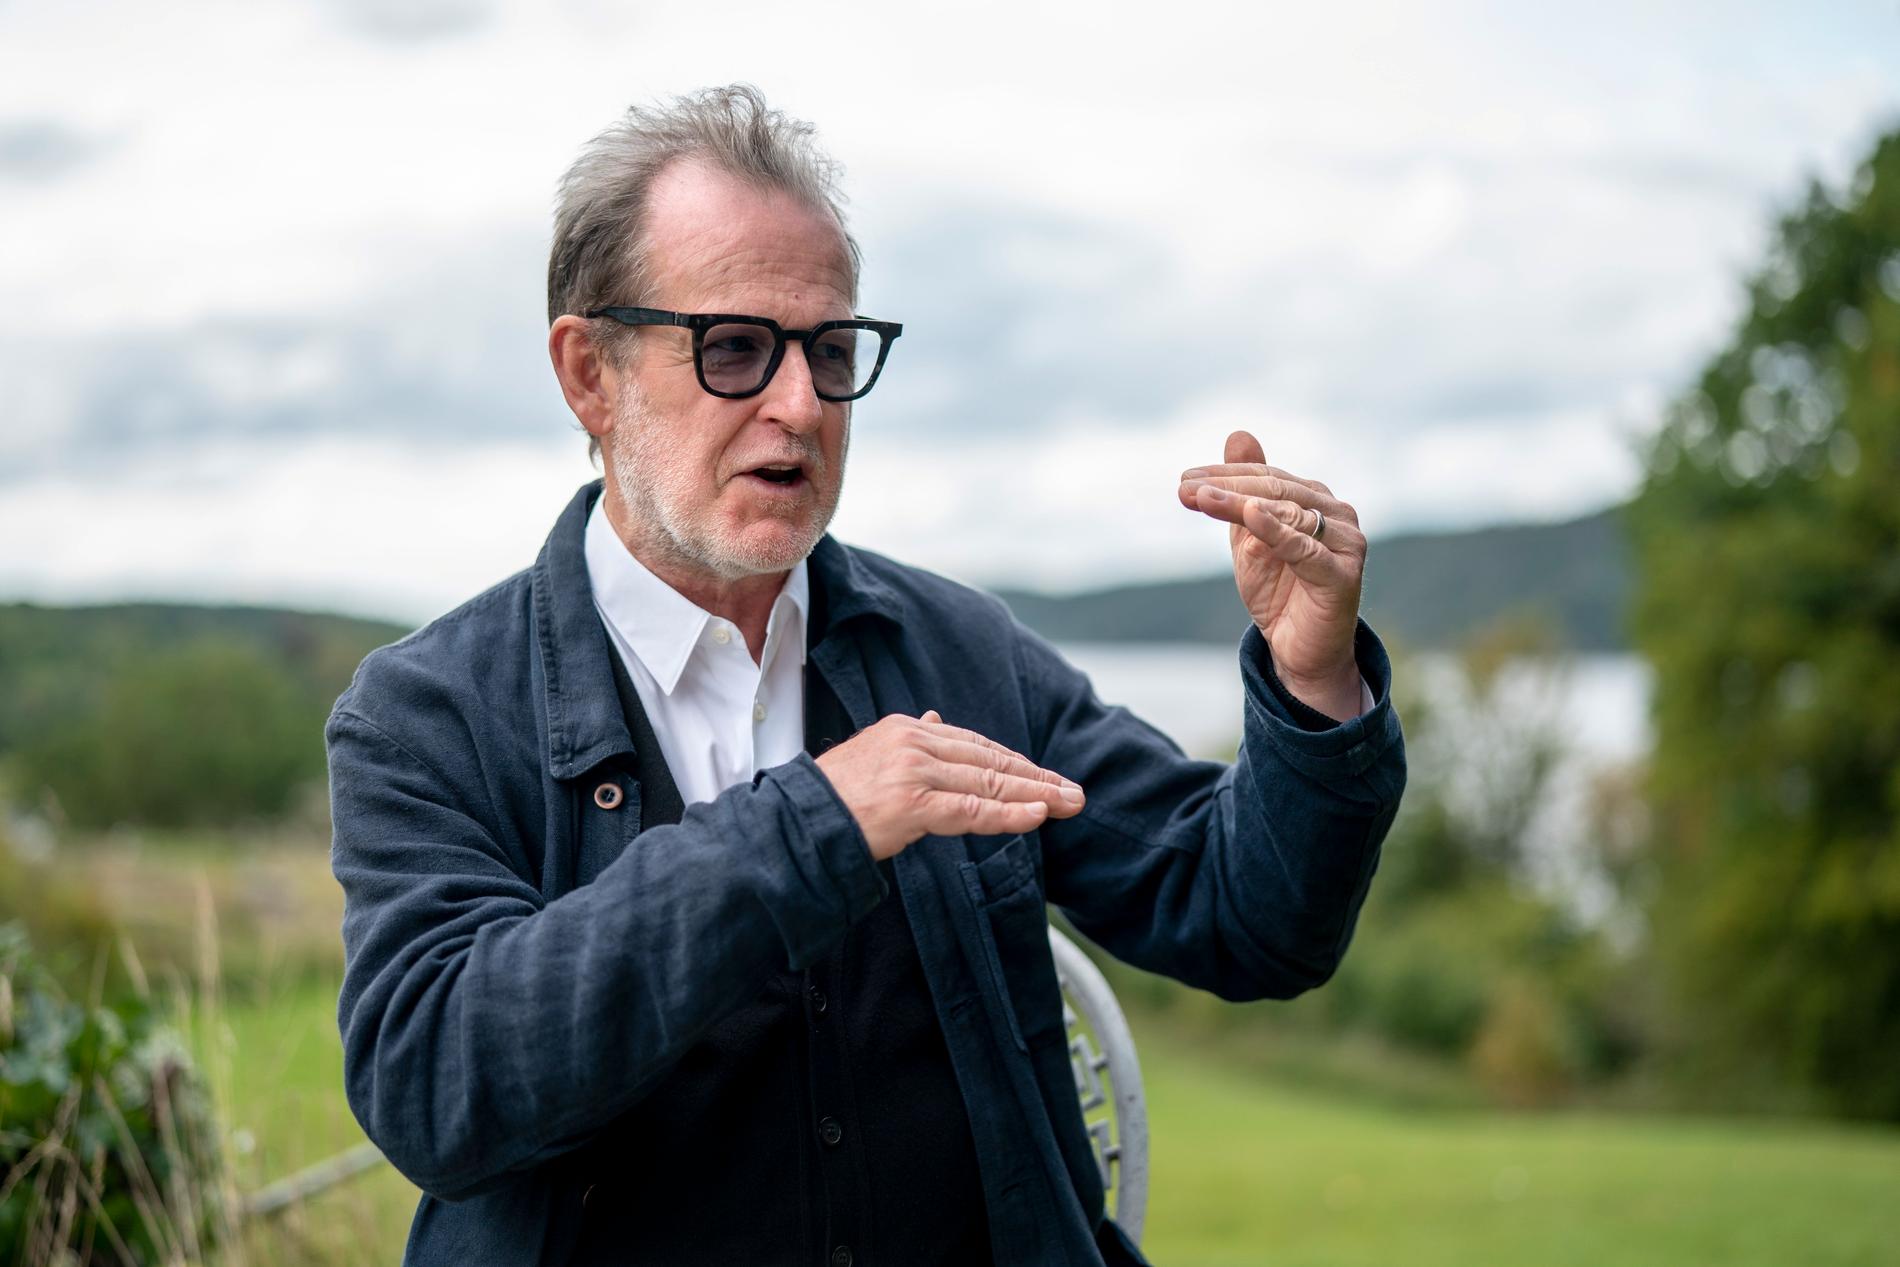 Björn Runge regisserar "Bränn alla mina brev". Berättelsen utspelas i tre olika tider, precis som i boken. Men filmen låter perspektiven mötas mera i nutidspartiet.